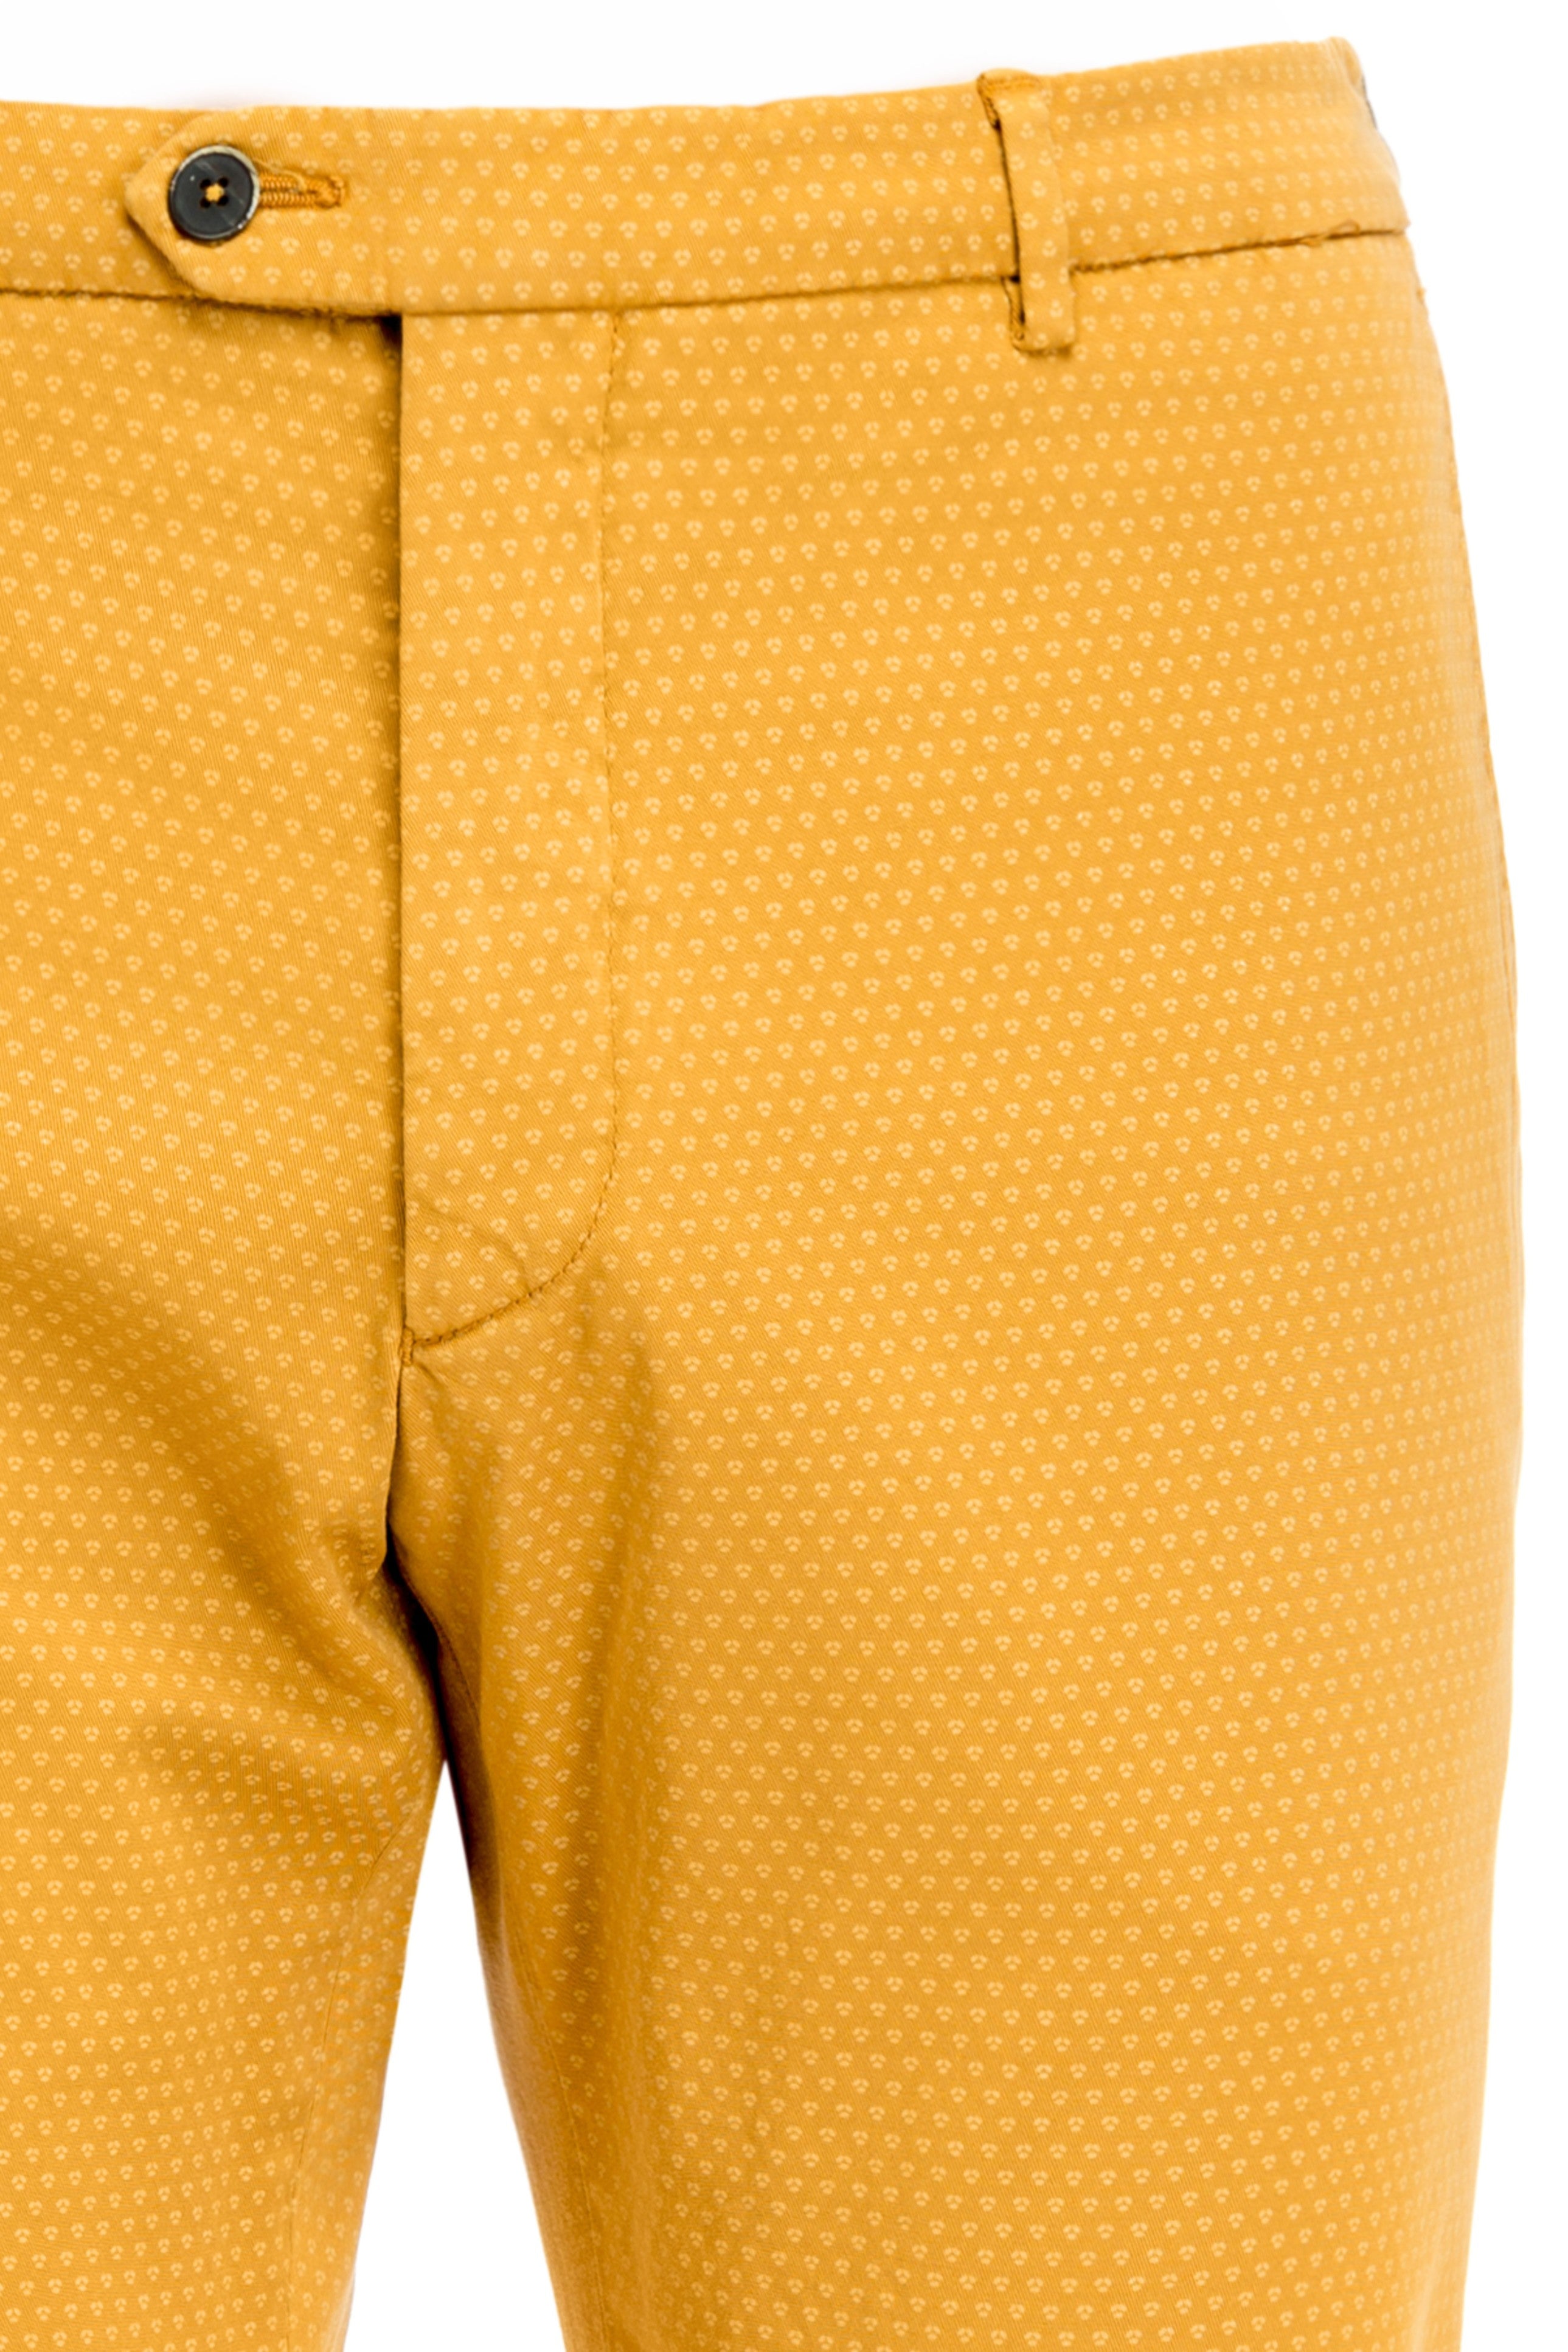 Yellow Chinos Pants